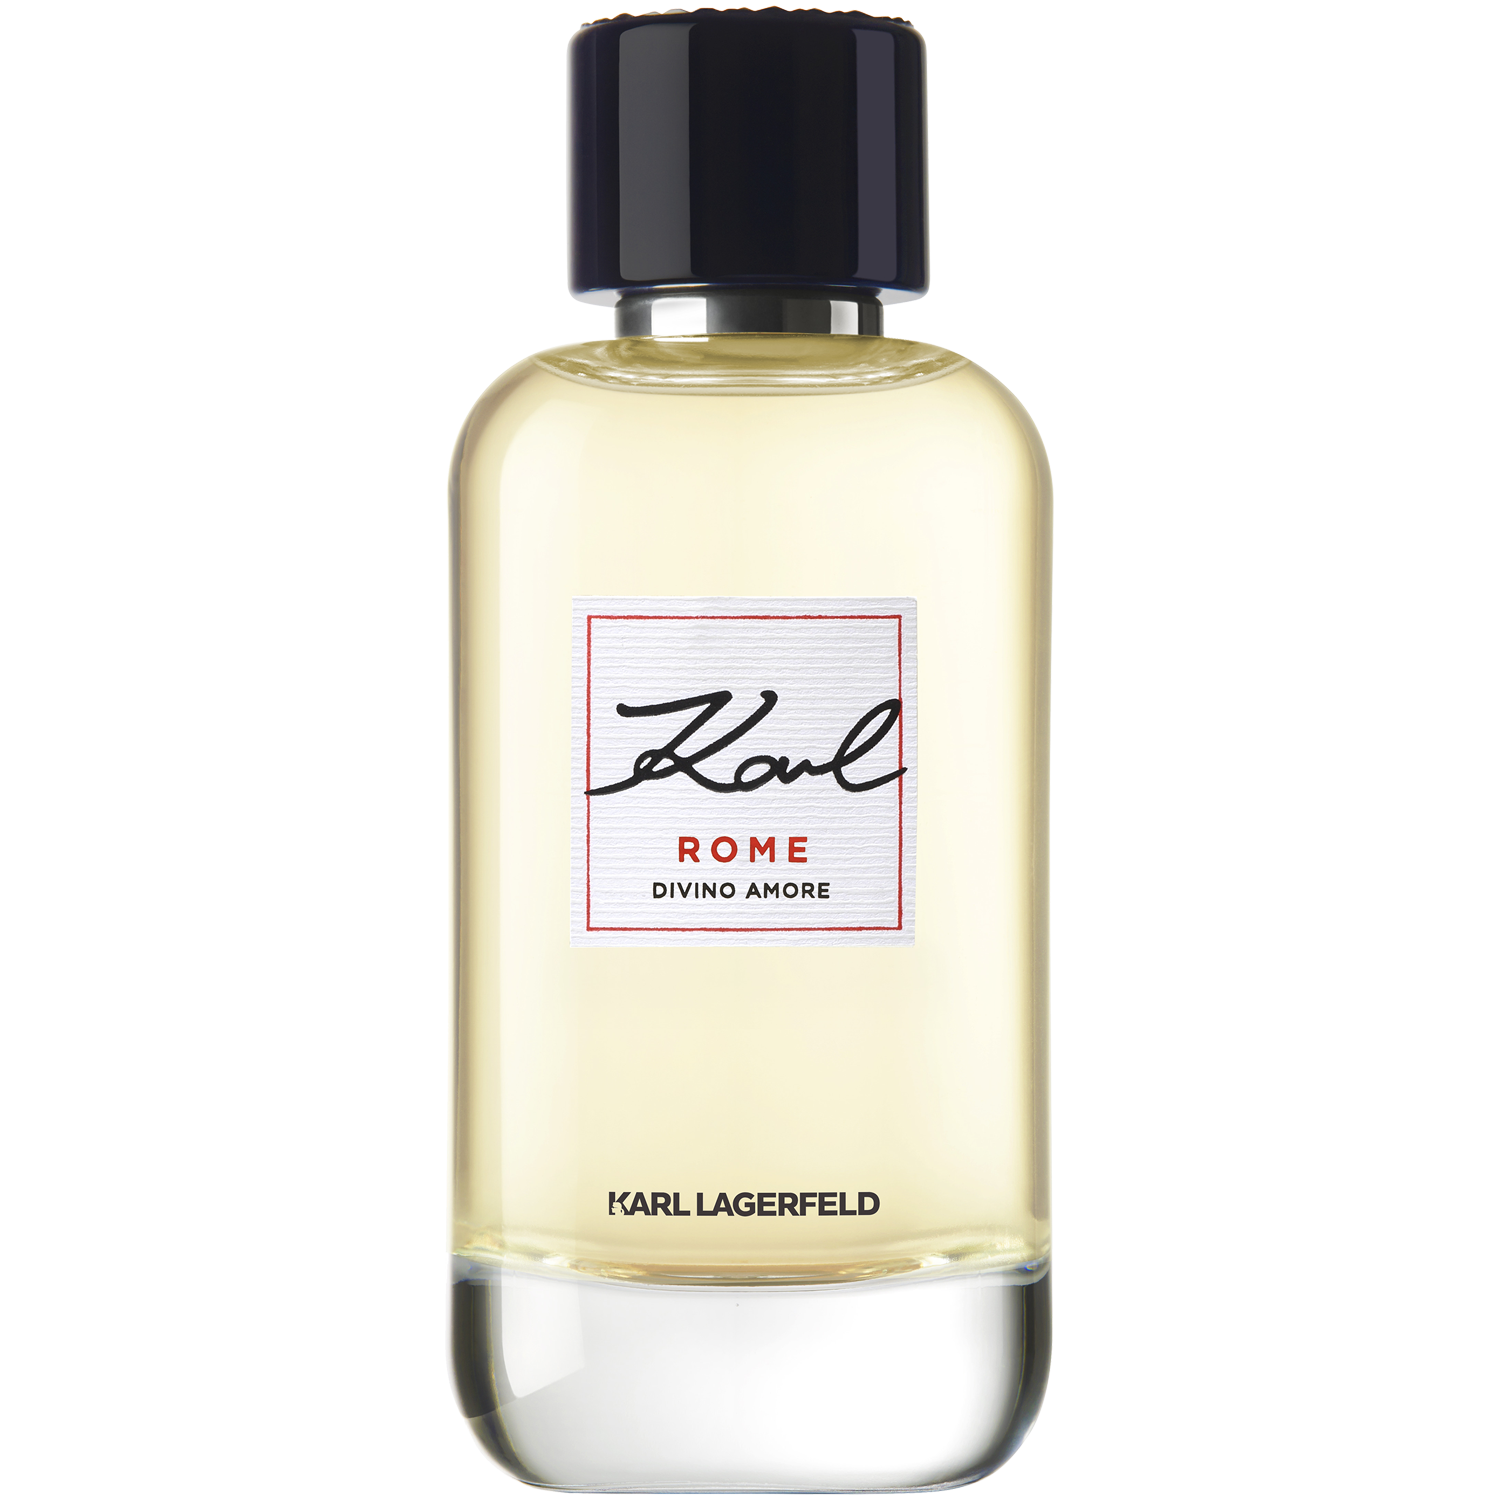 Женская парфюмированная вода Karl Lagerfeld Rome Divino Amore, 100 мл karl rome divino amore парфюмерная вода 100мл